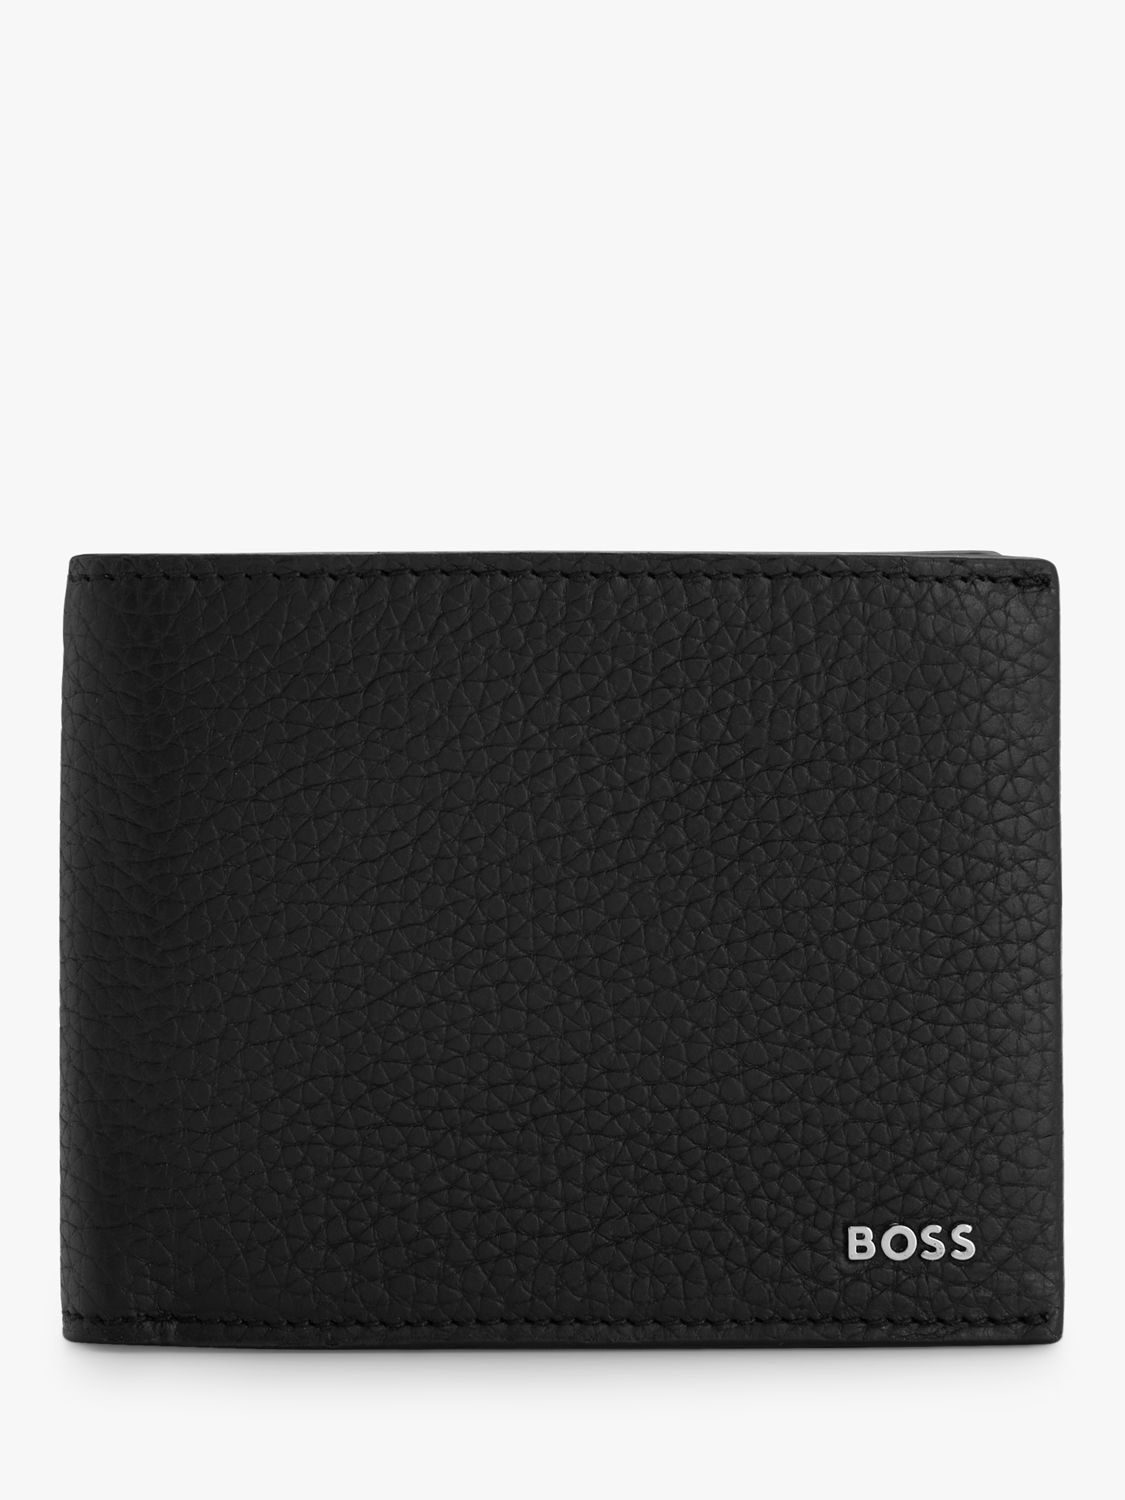 BOSS Crosstown Pebble Grain Trifold Wallet, Black, One Size